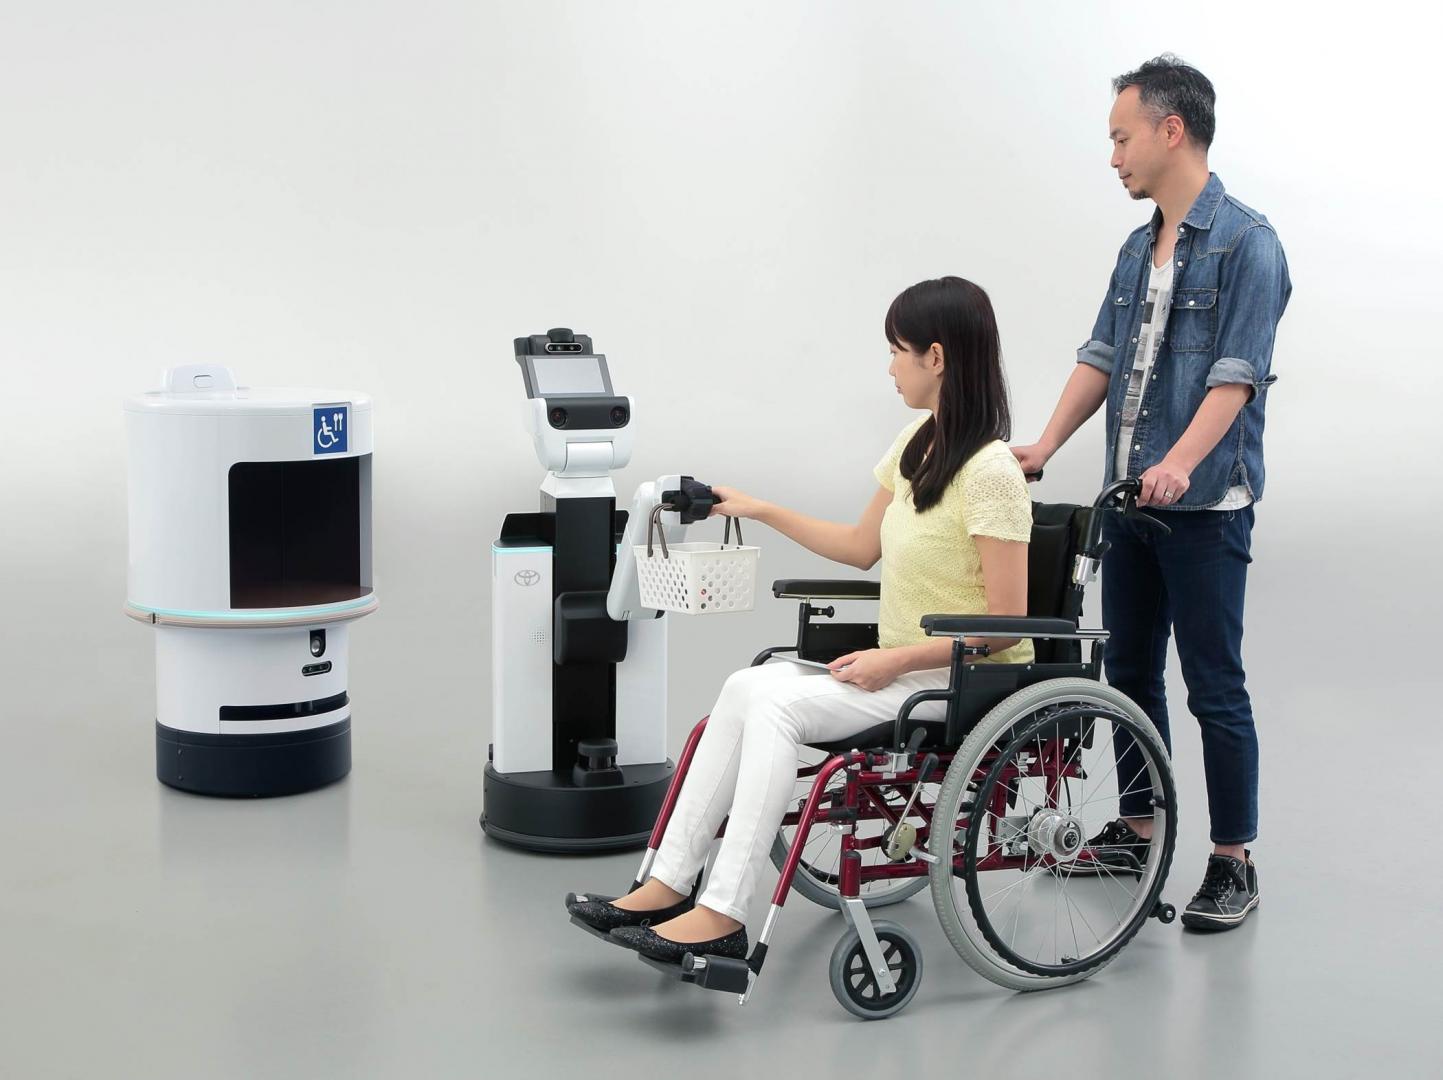 Toyota Robot giúp mọi người trải nghiệm giấc mơ tham dự Thế vận hội Olympic và Paralympic Tokyo 2020